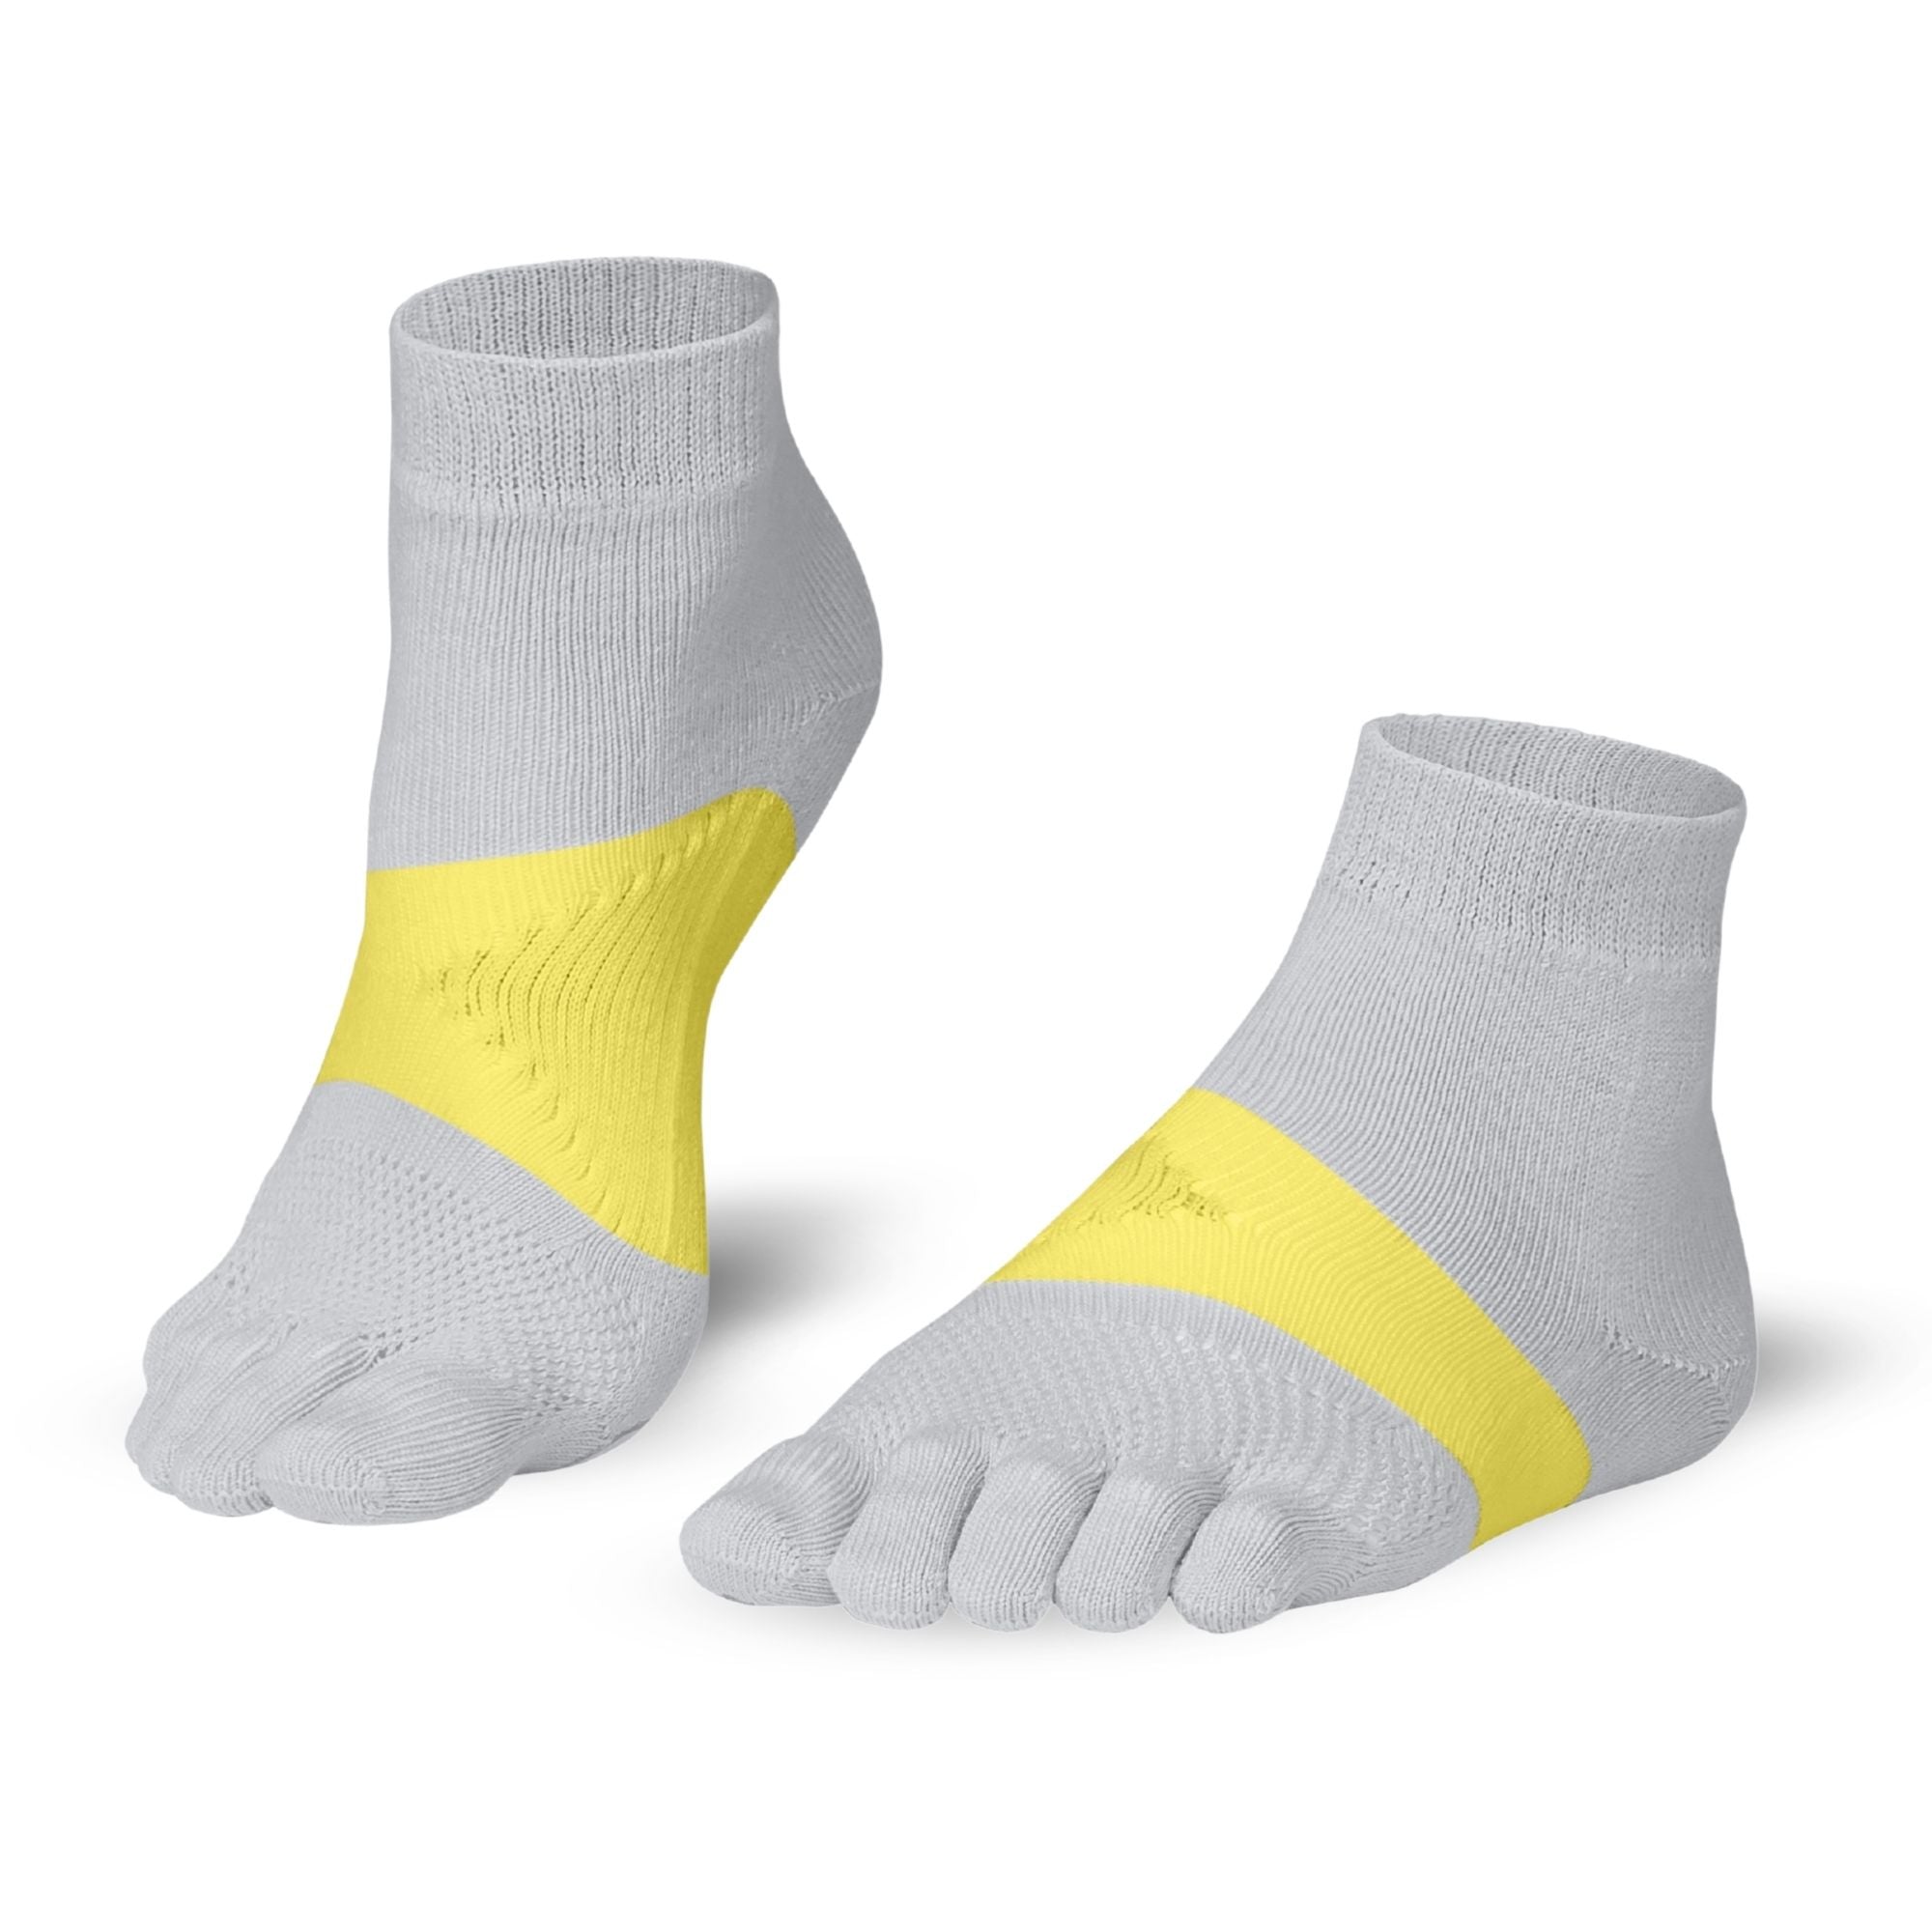 Knitido® Marathon - innovative running toe socks